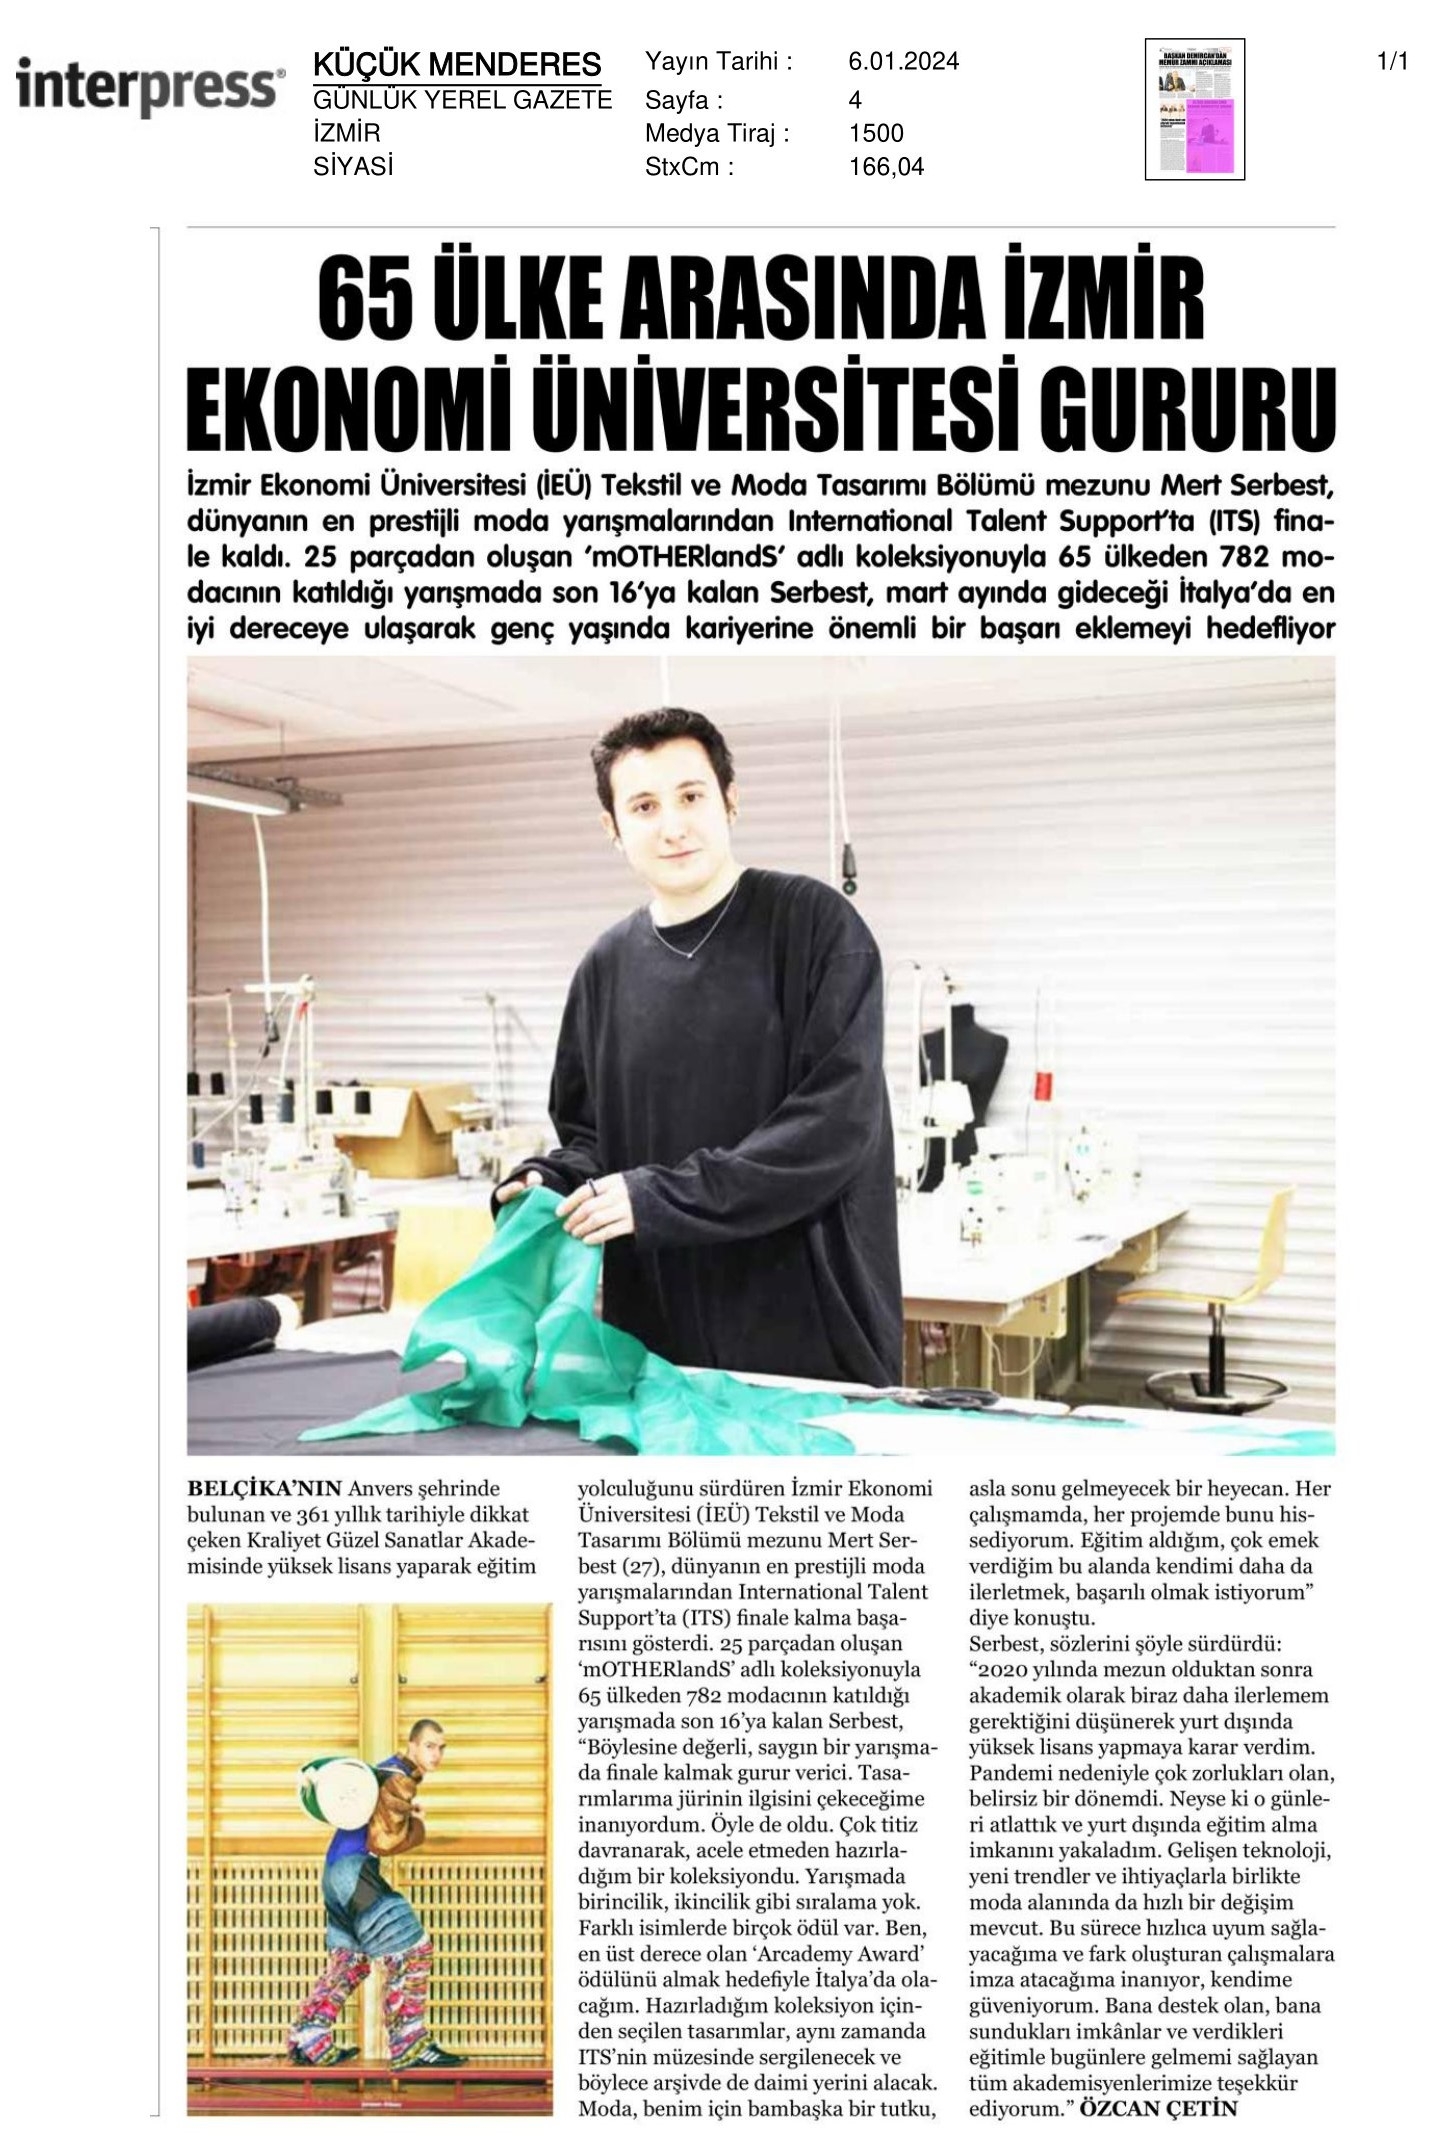 65 Ülke Arasında ‘İzmir Ekonomi’ Gururu